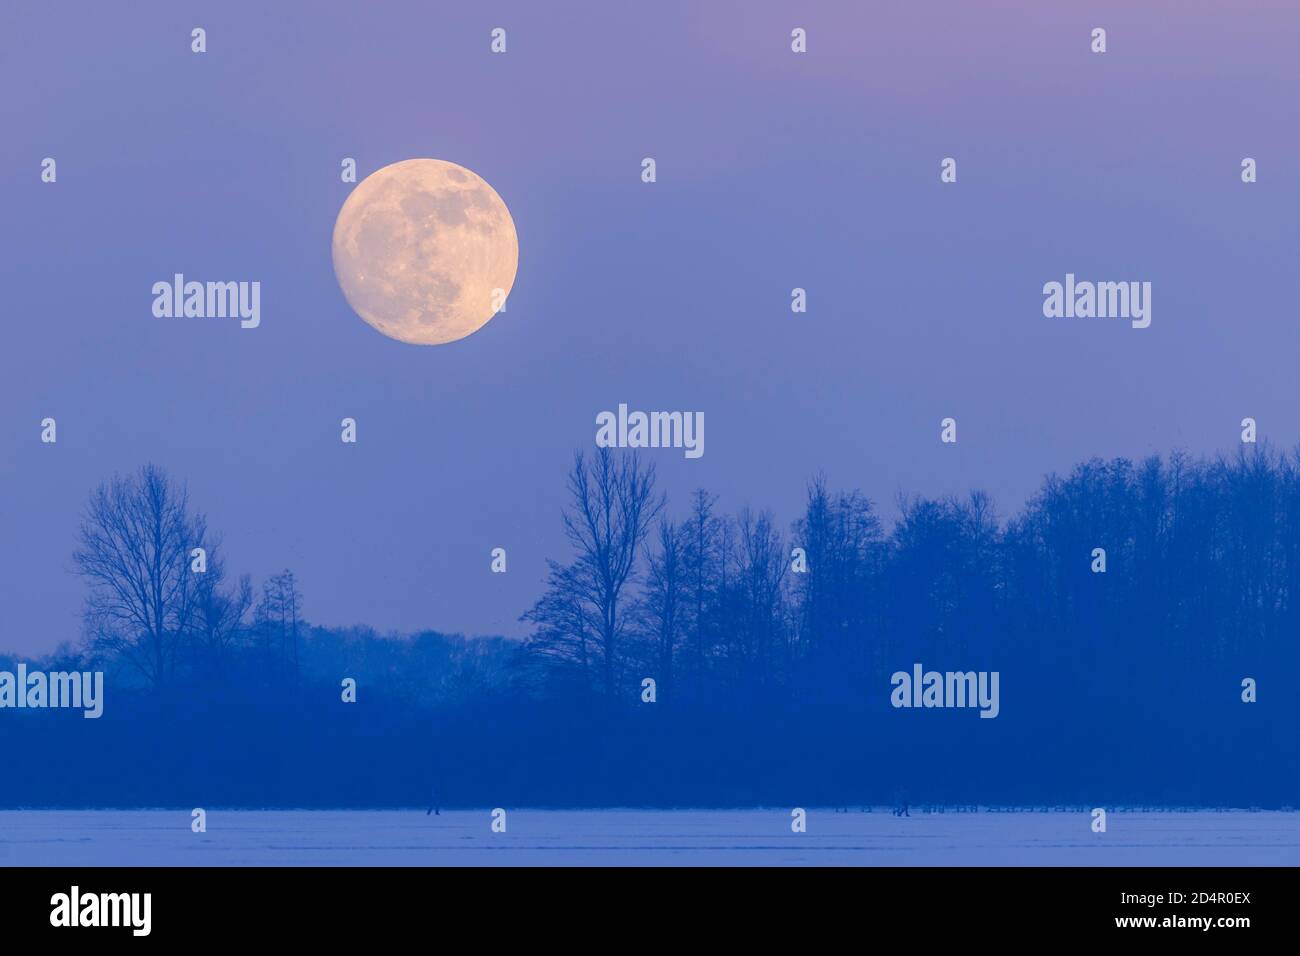 Moonrise over the Dümmer, Oldenburger Münsterland, Dümmerlohhausen, Lower Saxony, Germany, Europe Stock Photo